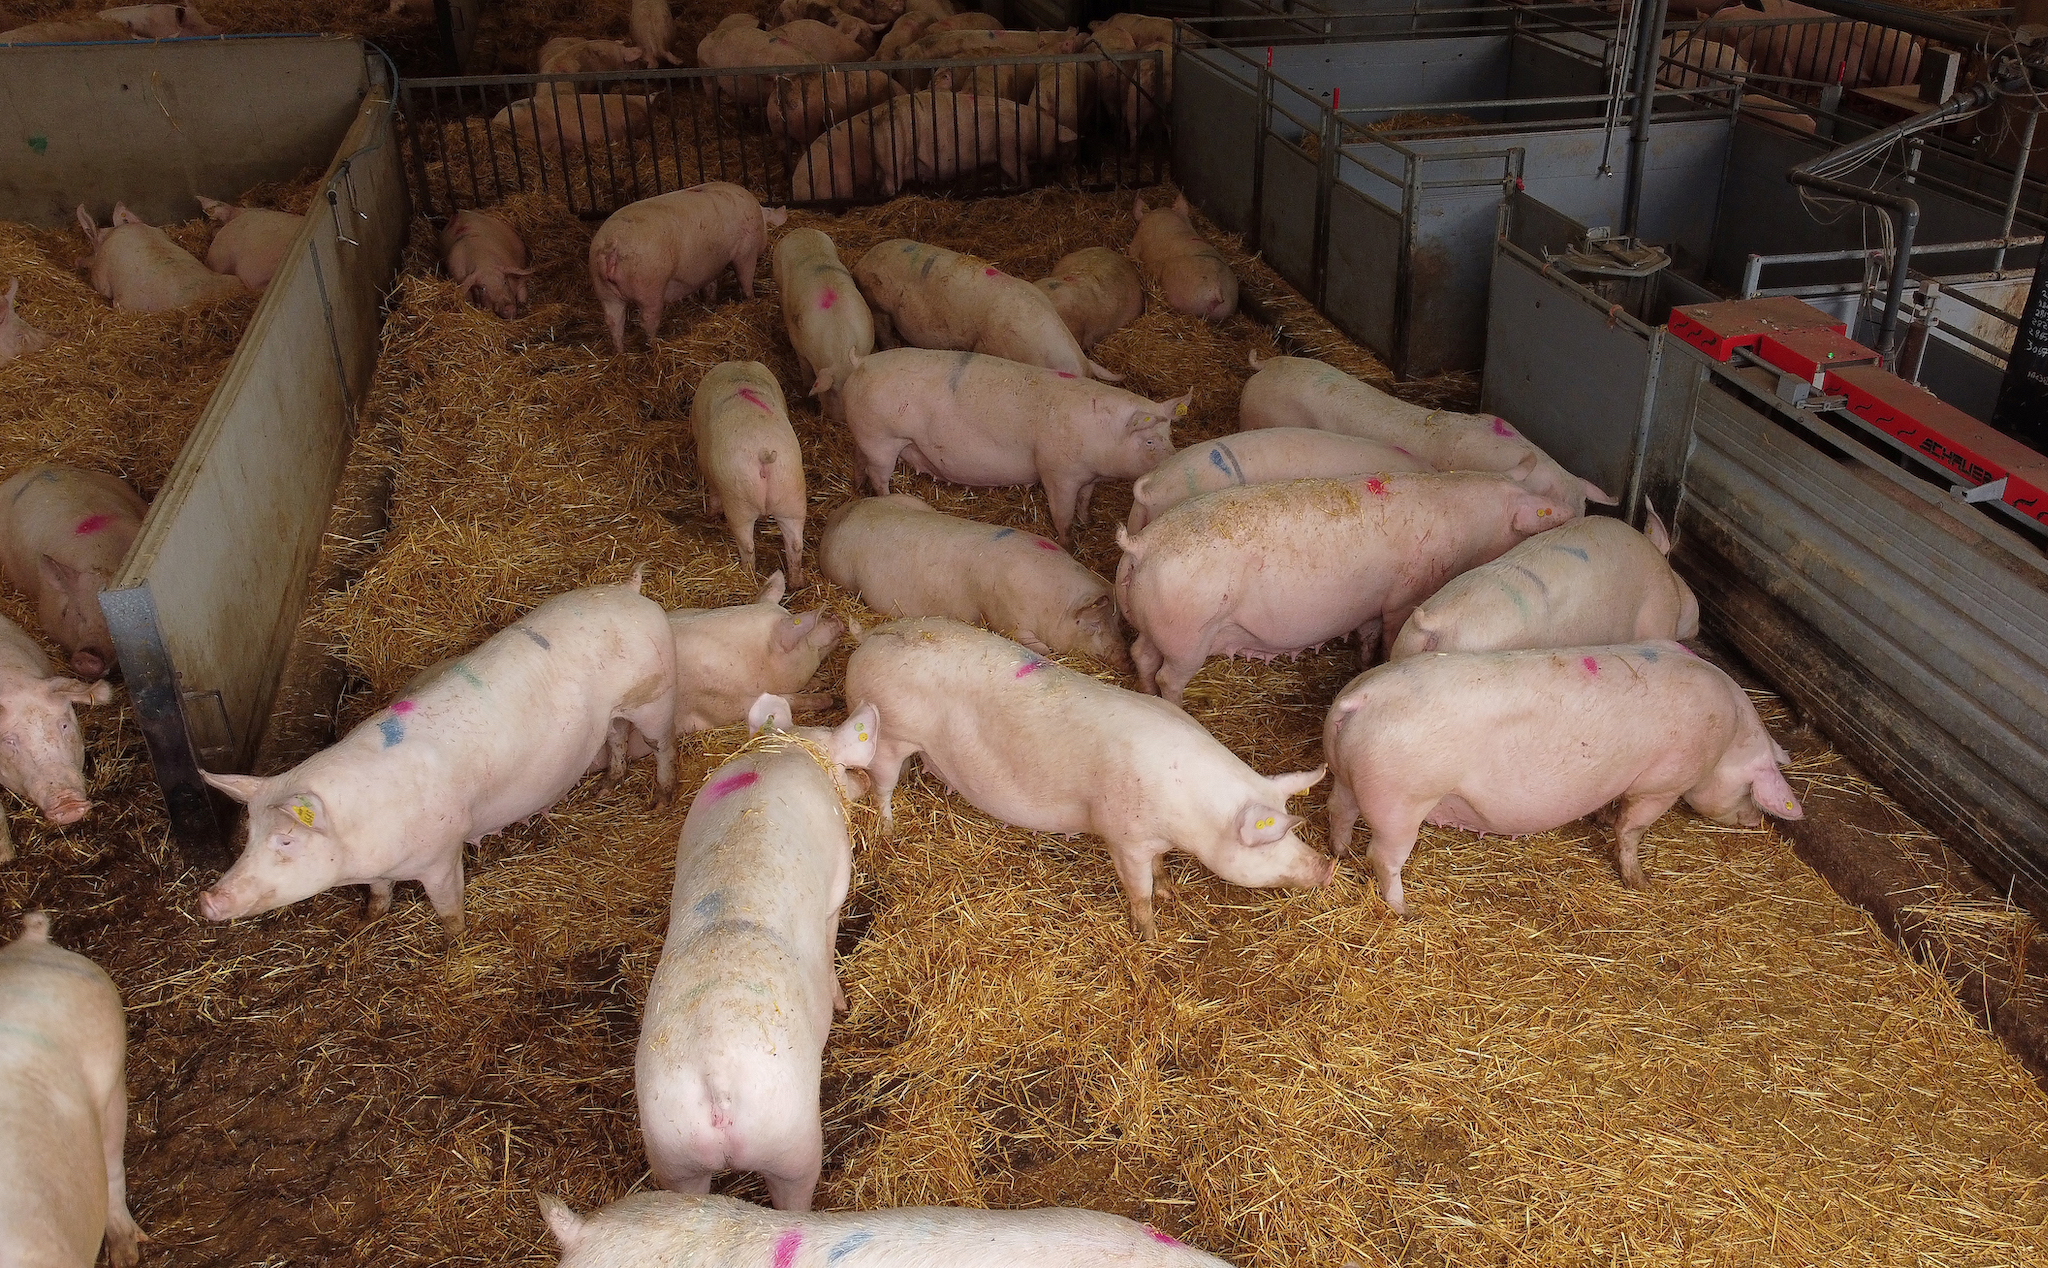 Nước Anh sẽ cấp thị thực 6 tháng cho các công nhân mổ lợn